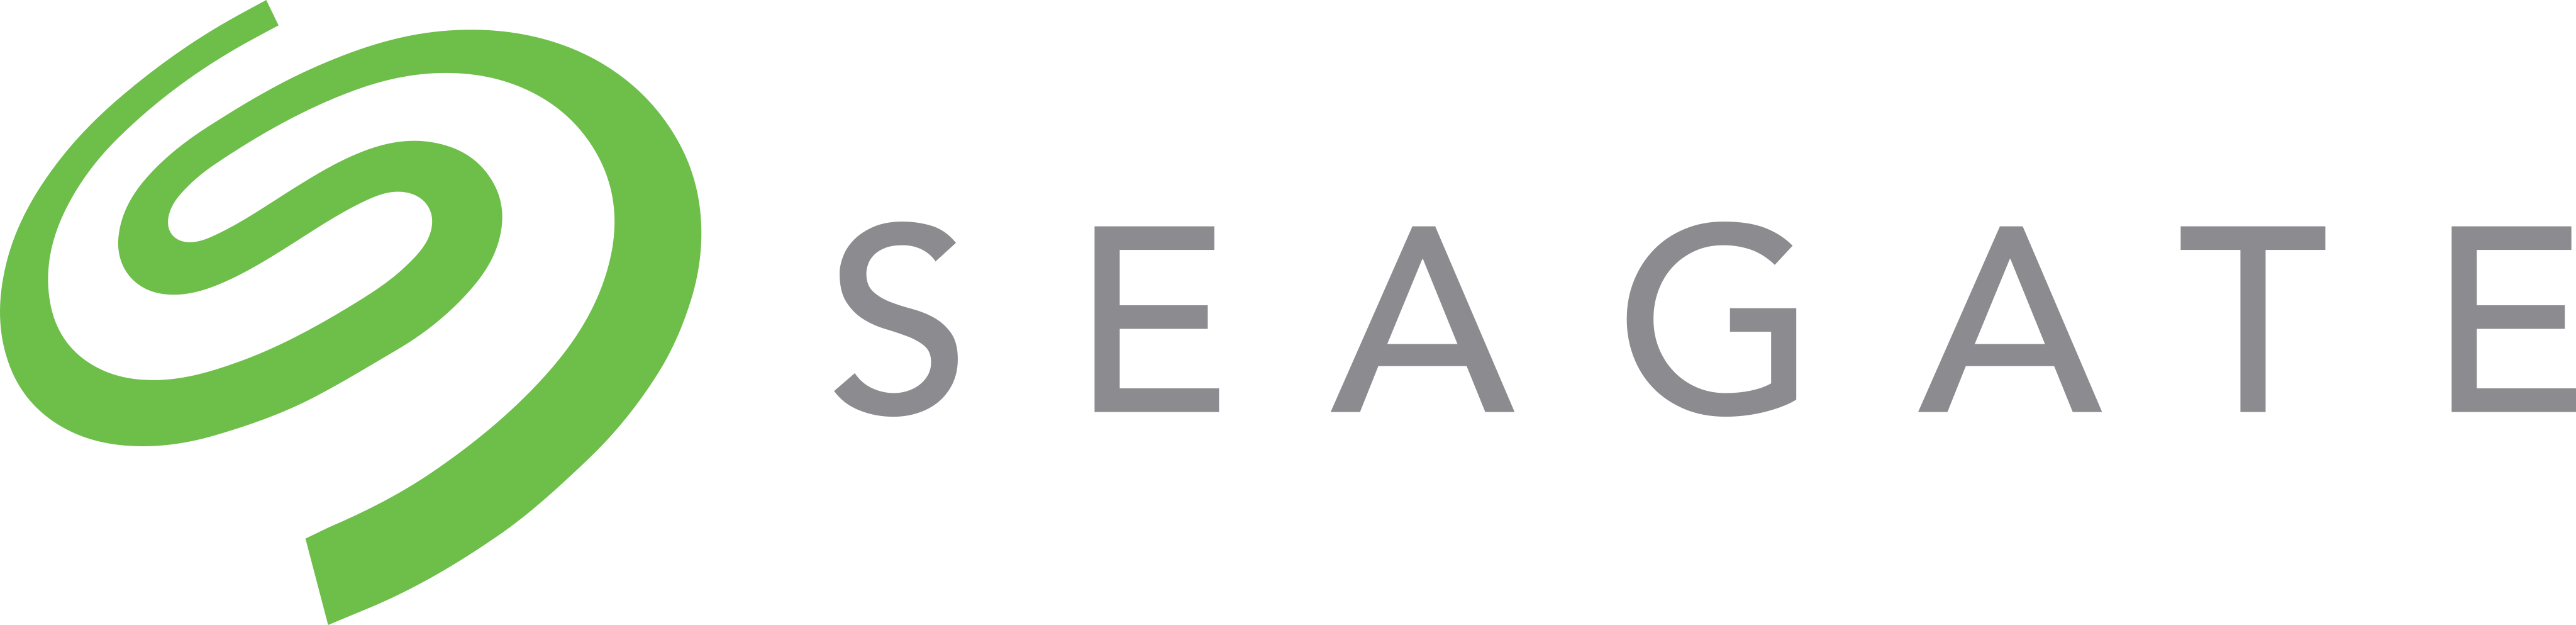 Seagate Logo.